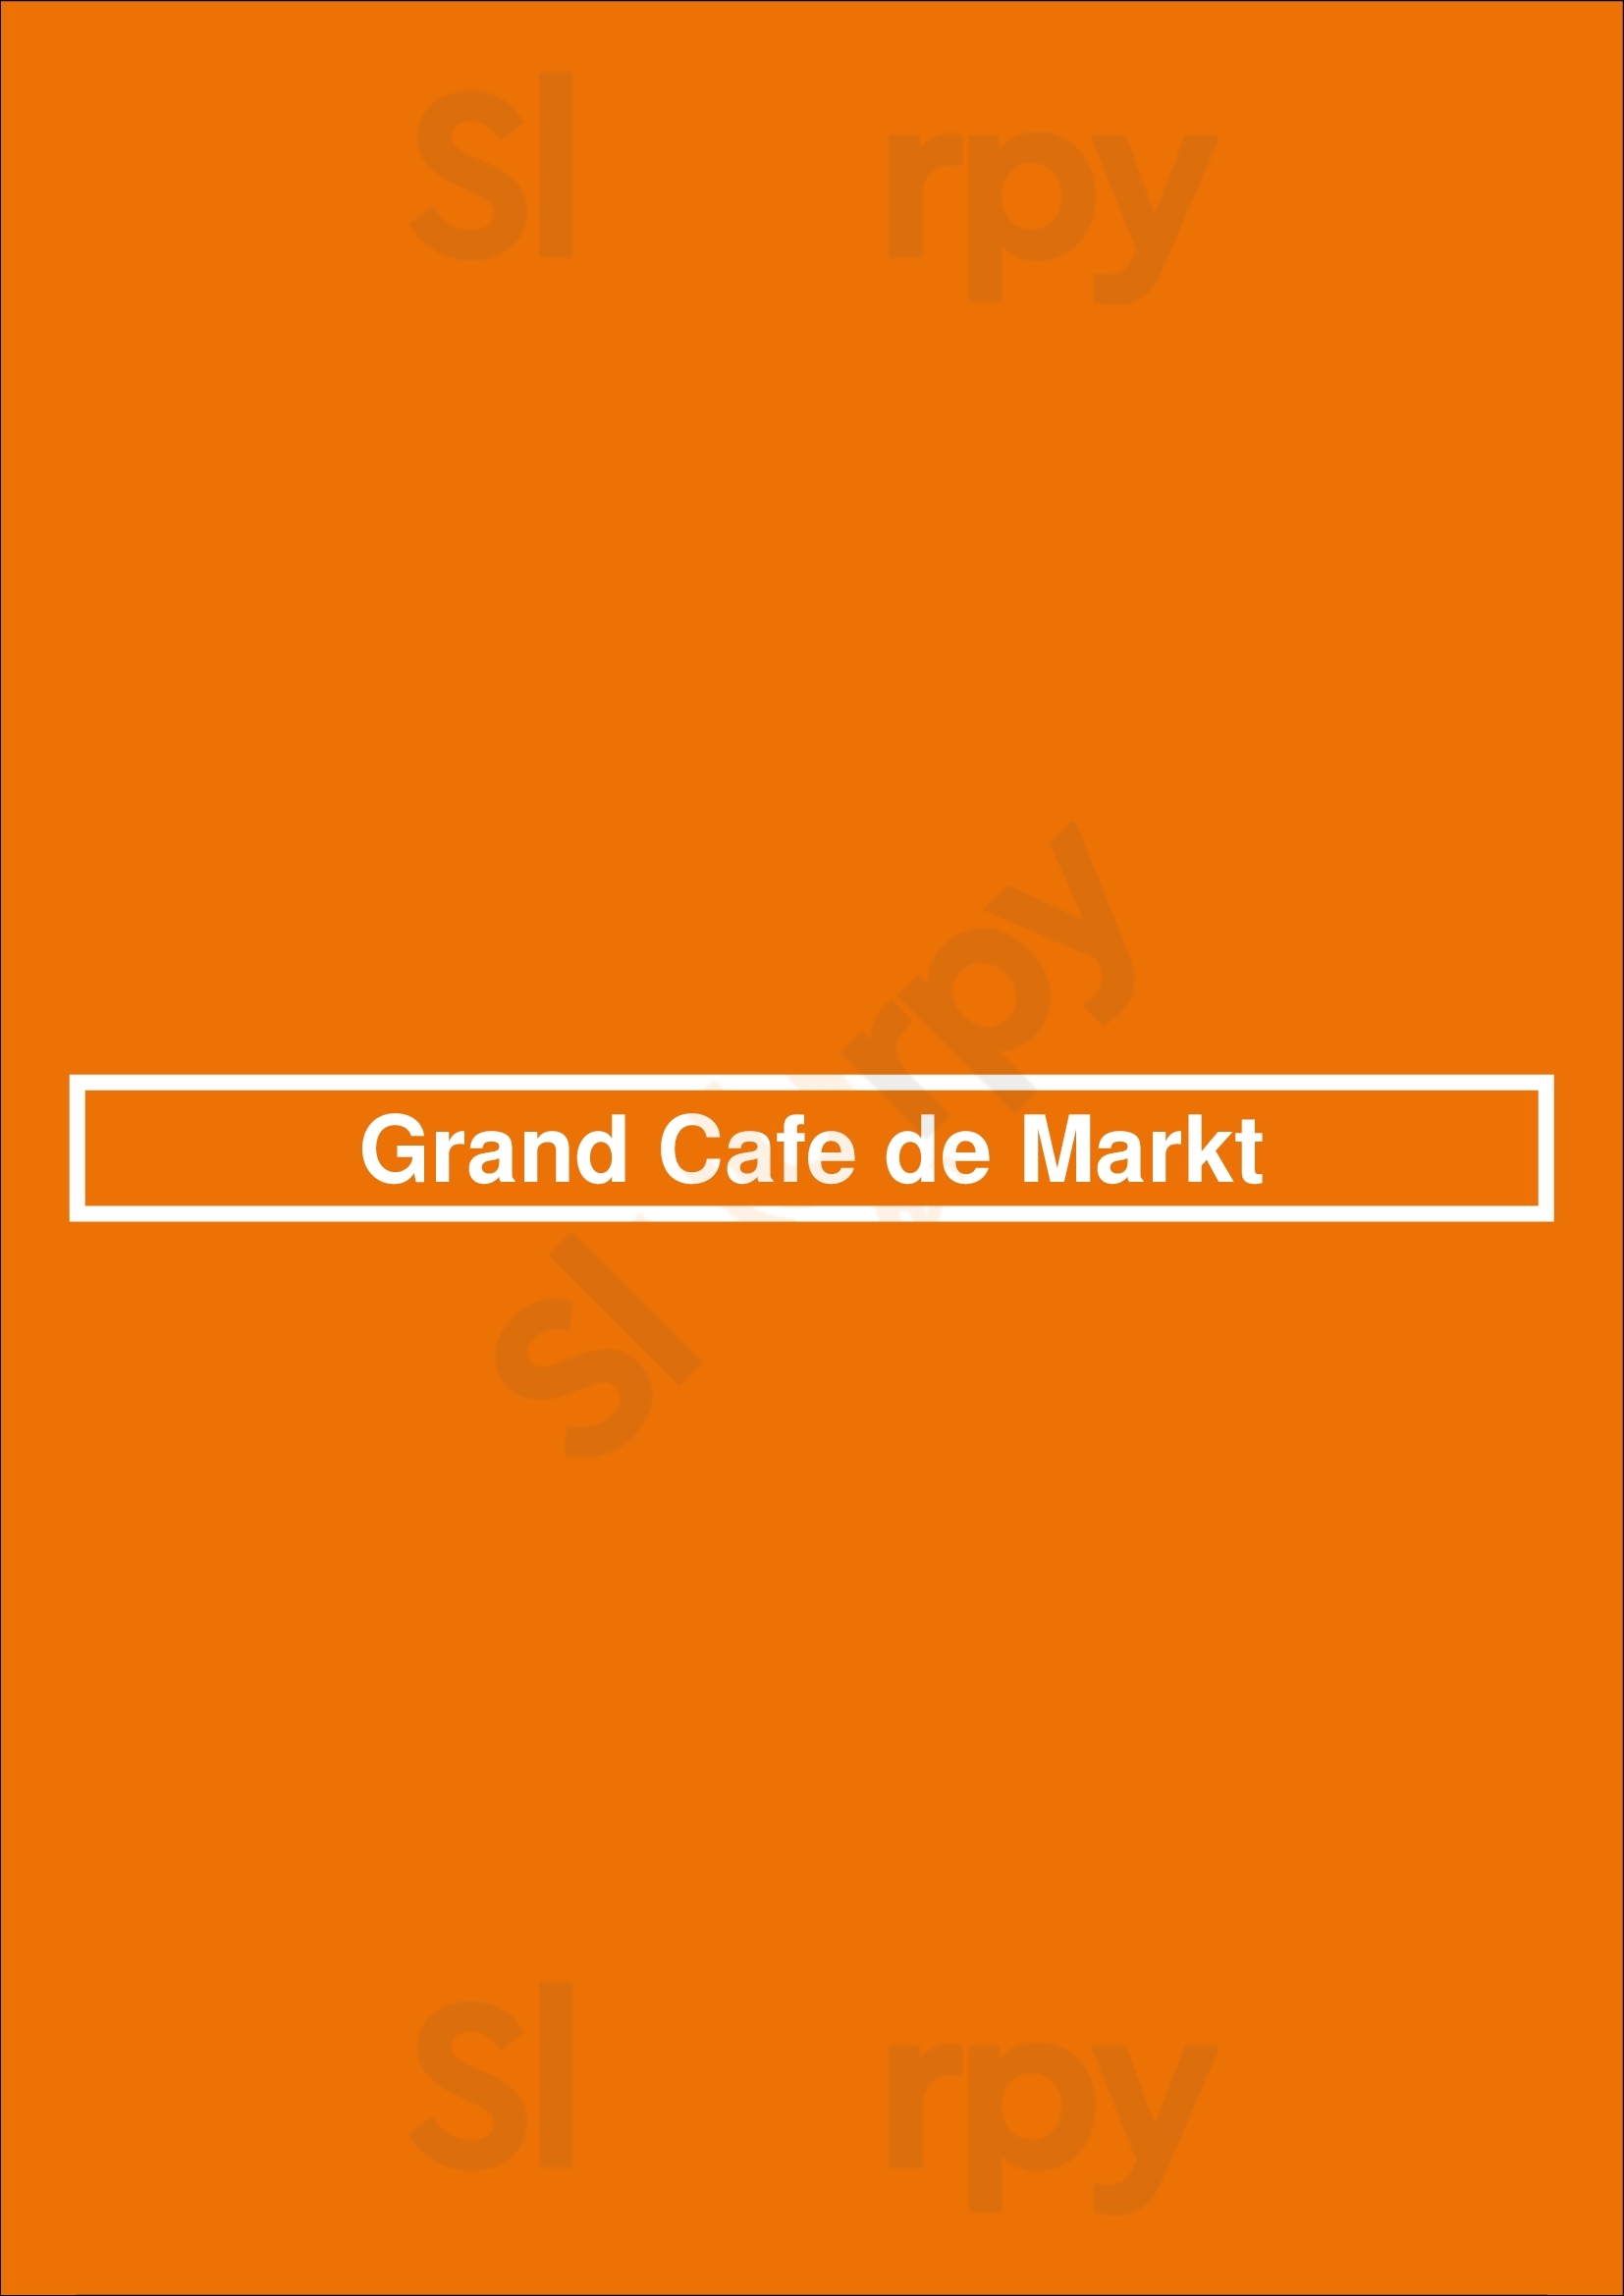 Grand Cafe De Markt Veenendaal Menu - 1